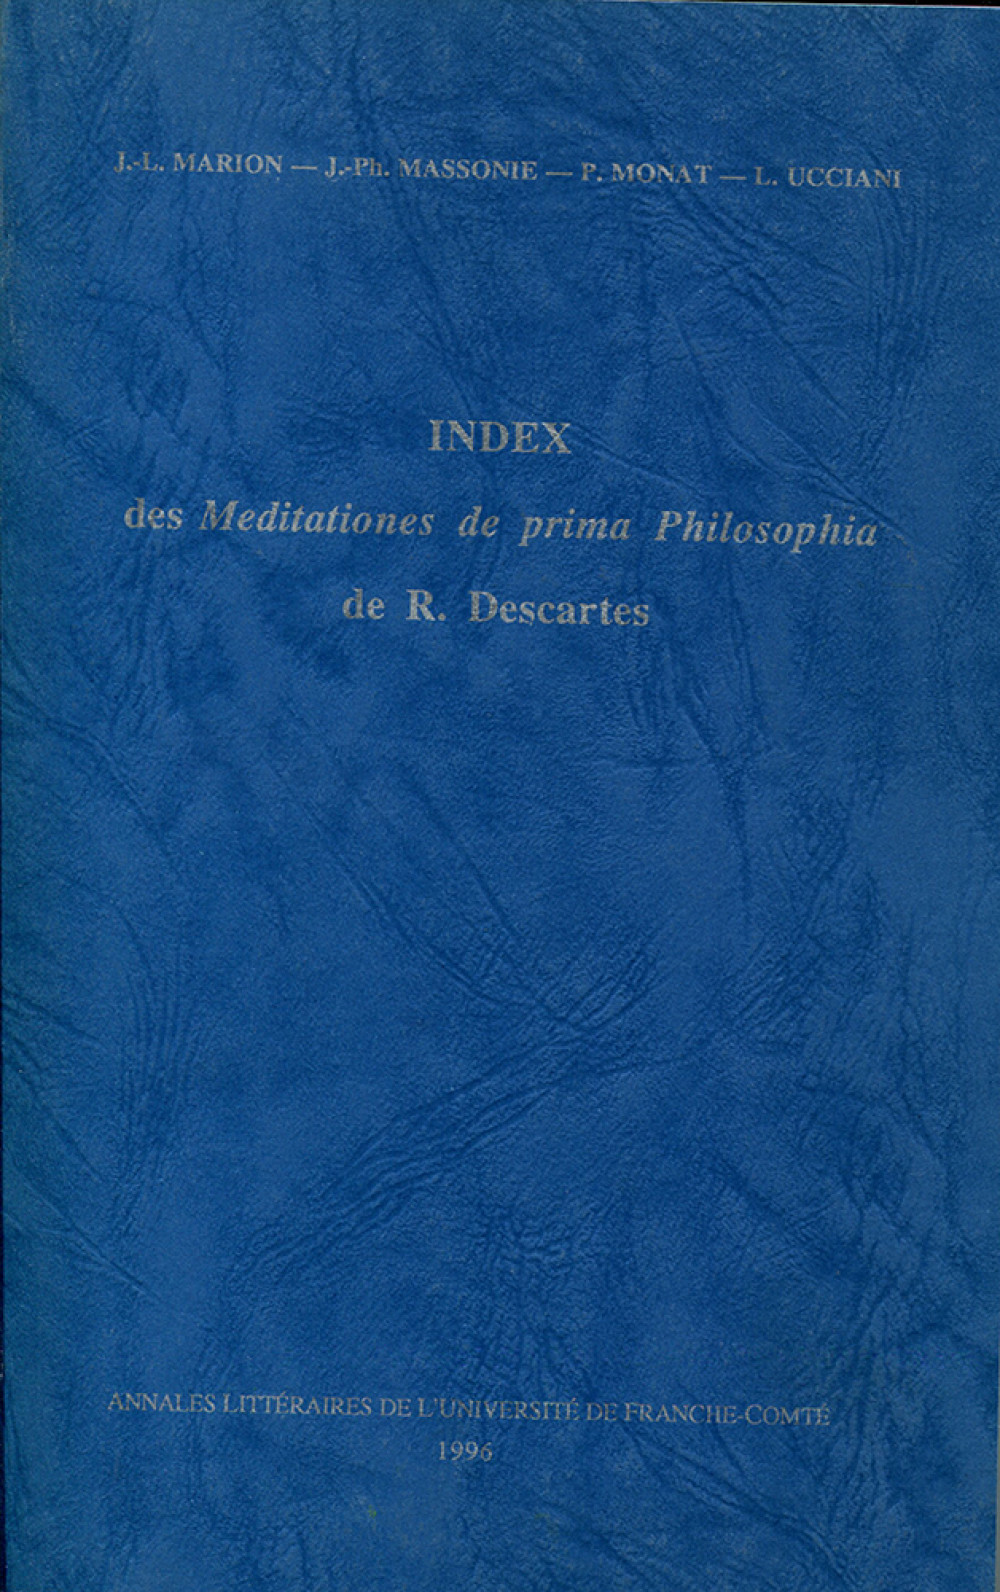 Index des Meditationes de prima Philosophia de R. Descartes